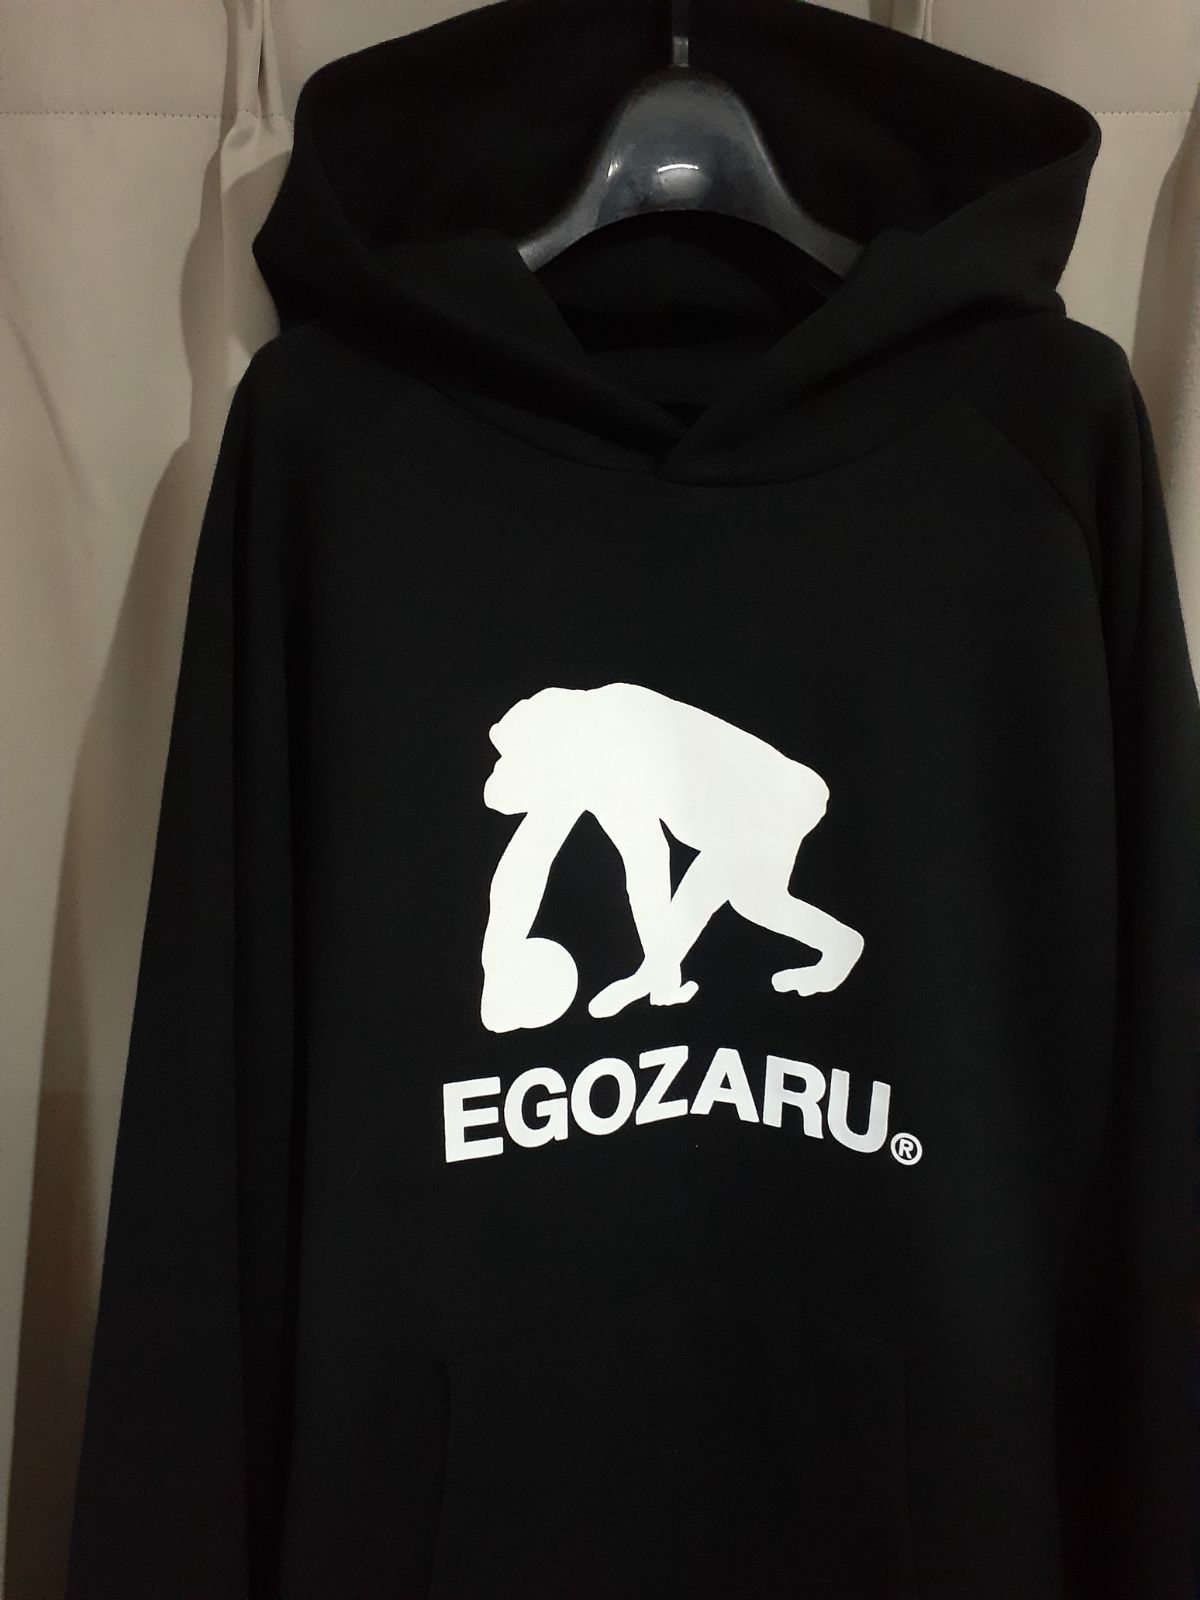 エゴザル EGOZARU パーカー 黒 ブラック XL - バスケットボール